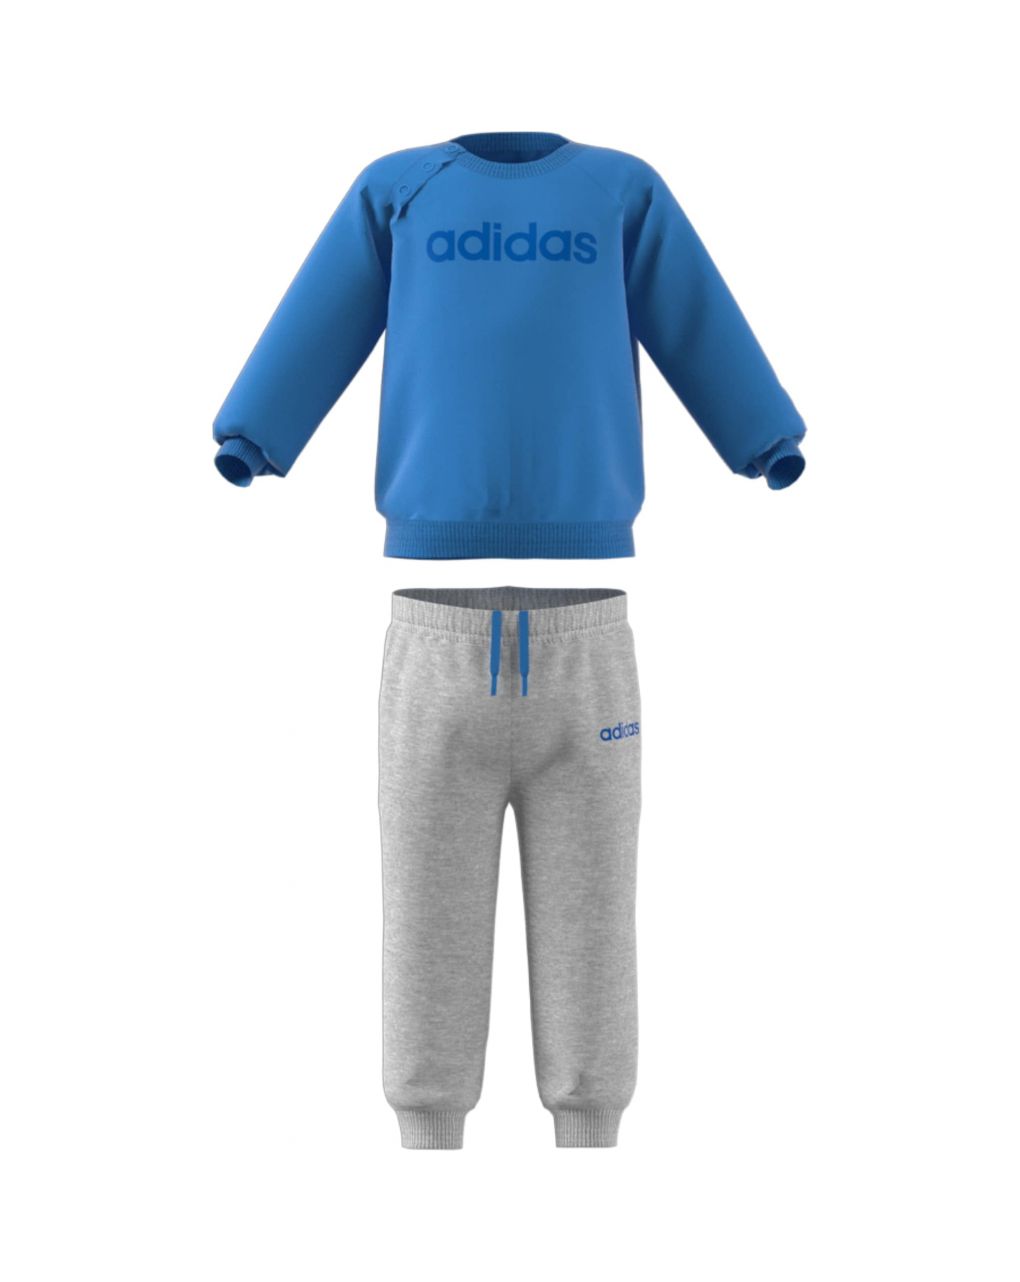 Adidas σετ φορμασ baby boy - ei7963 - Adidas